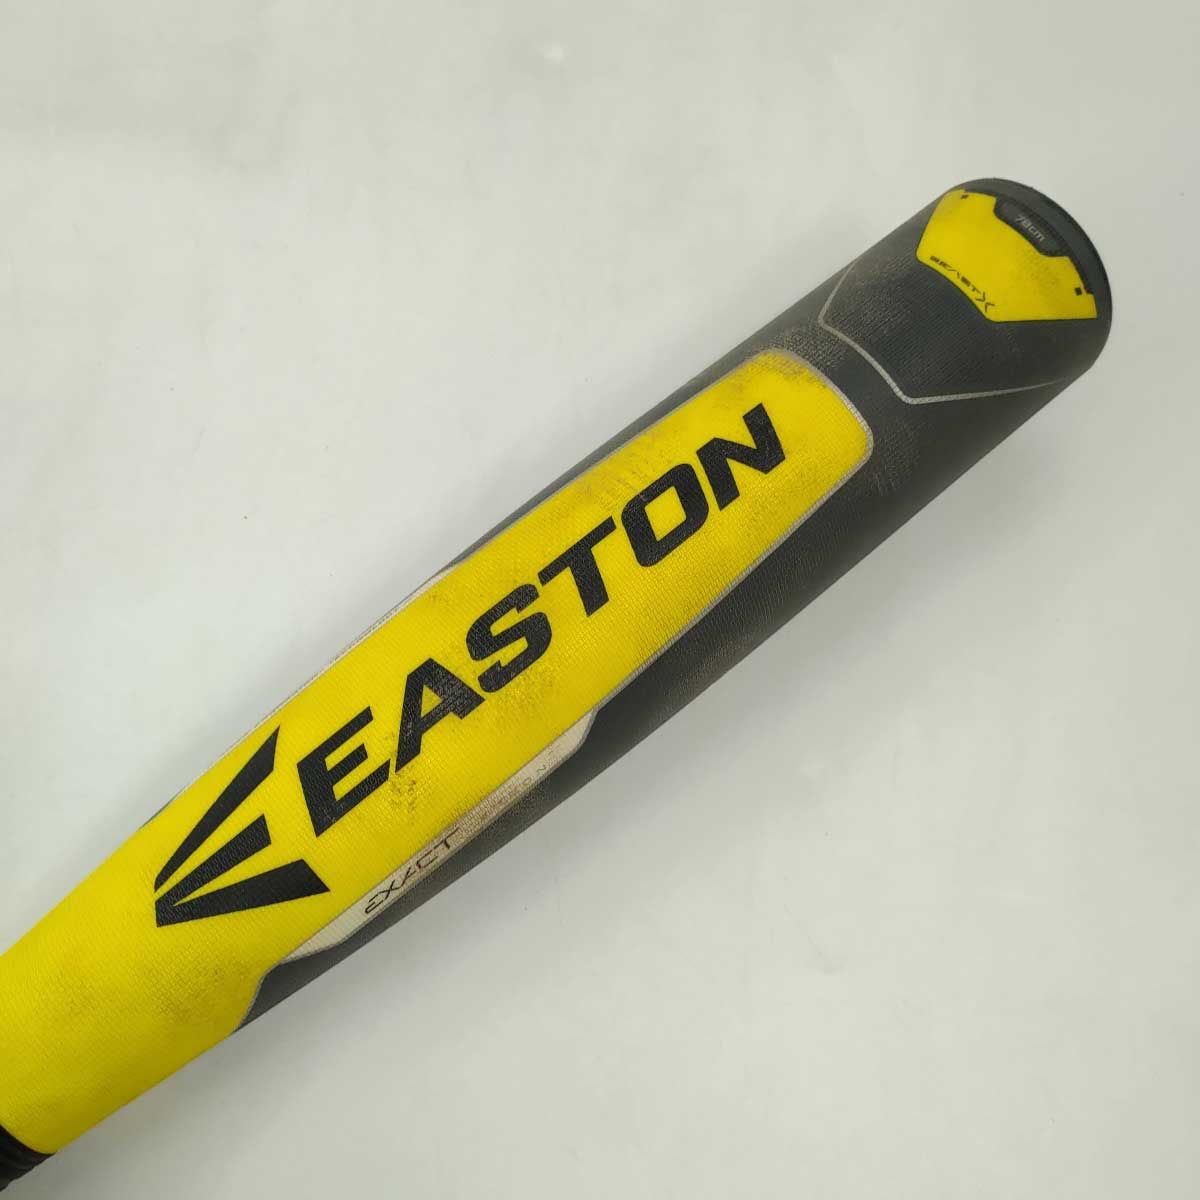 イーストン 少年 野球 軟式用バット BEAST X HYBRID TORQ NY18BXHT